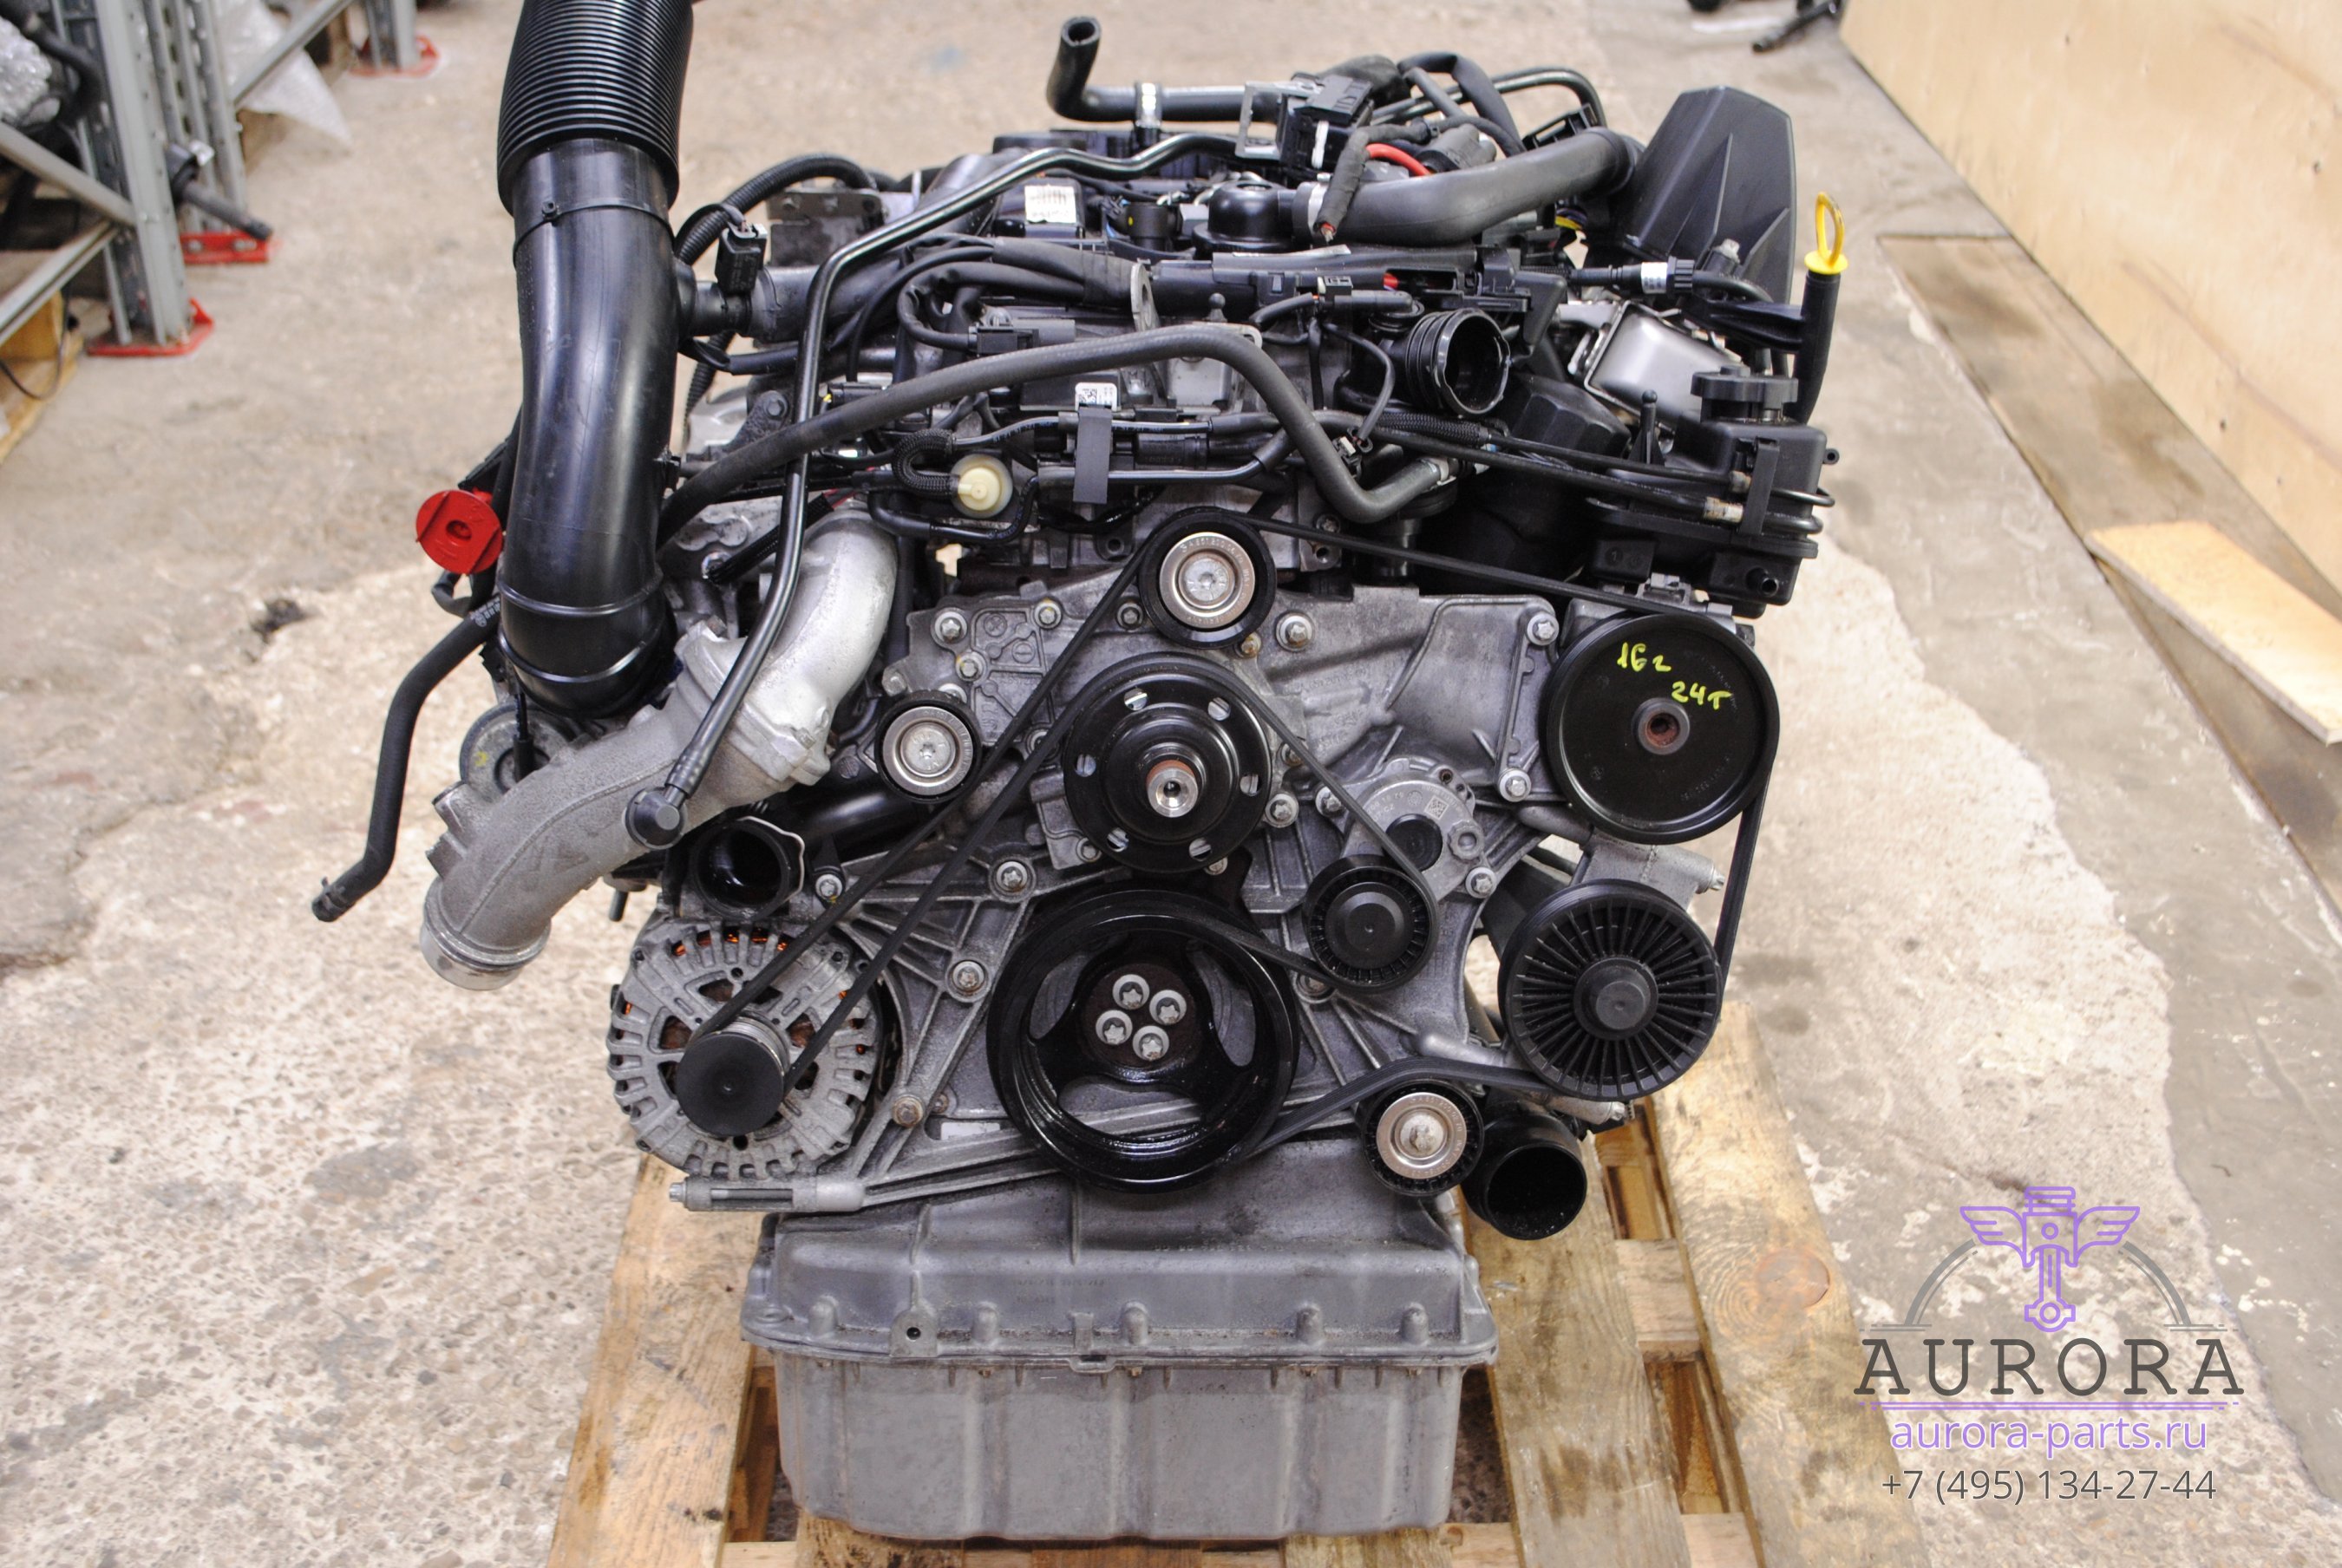 Двигатель в сборе  2.2 CDi OM 651 (16г.в. пробег 24 тыс. км.) без сцепления и вискомуфты.